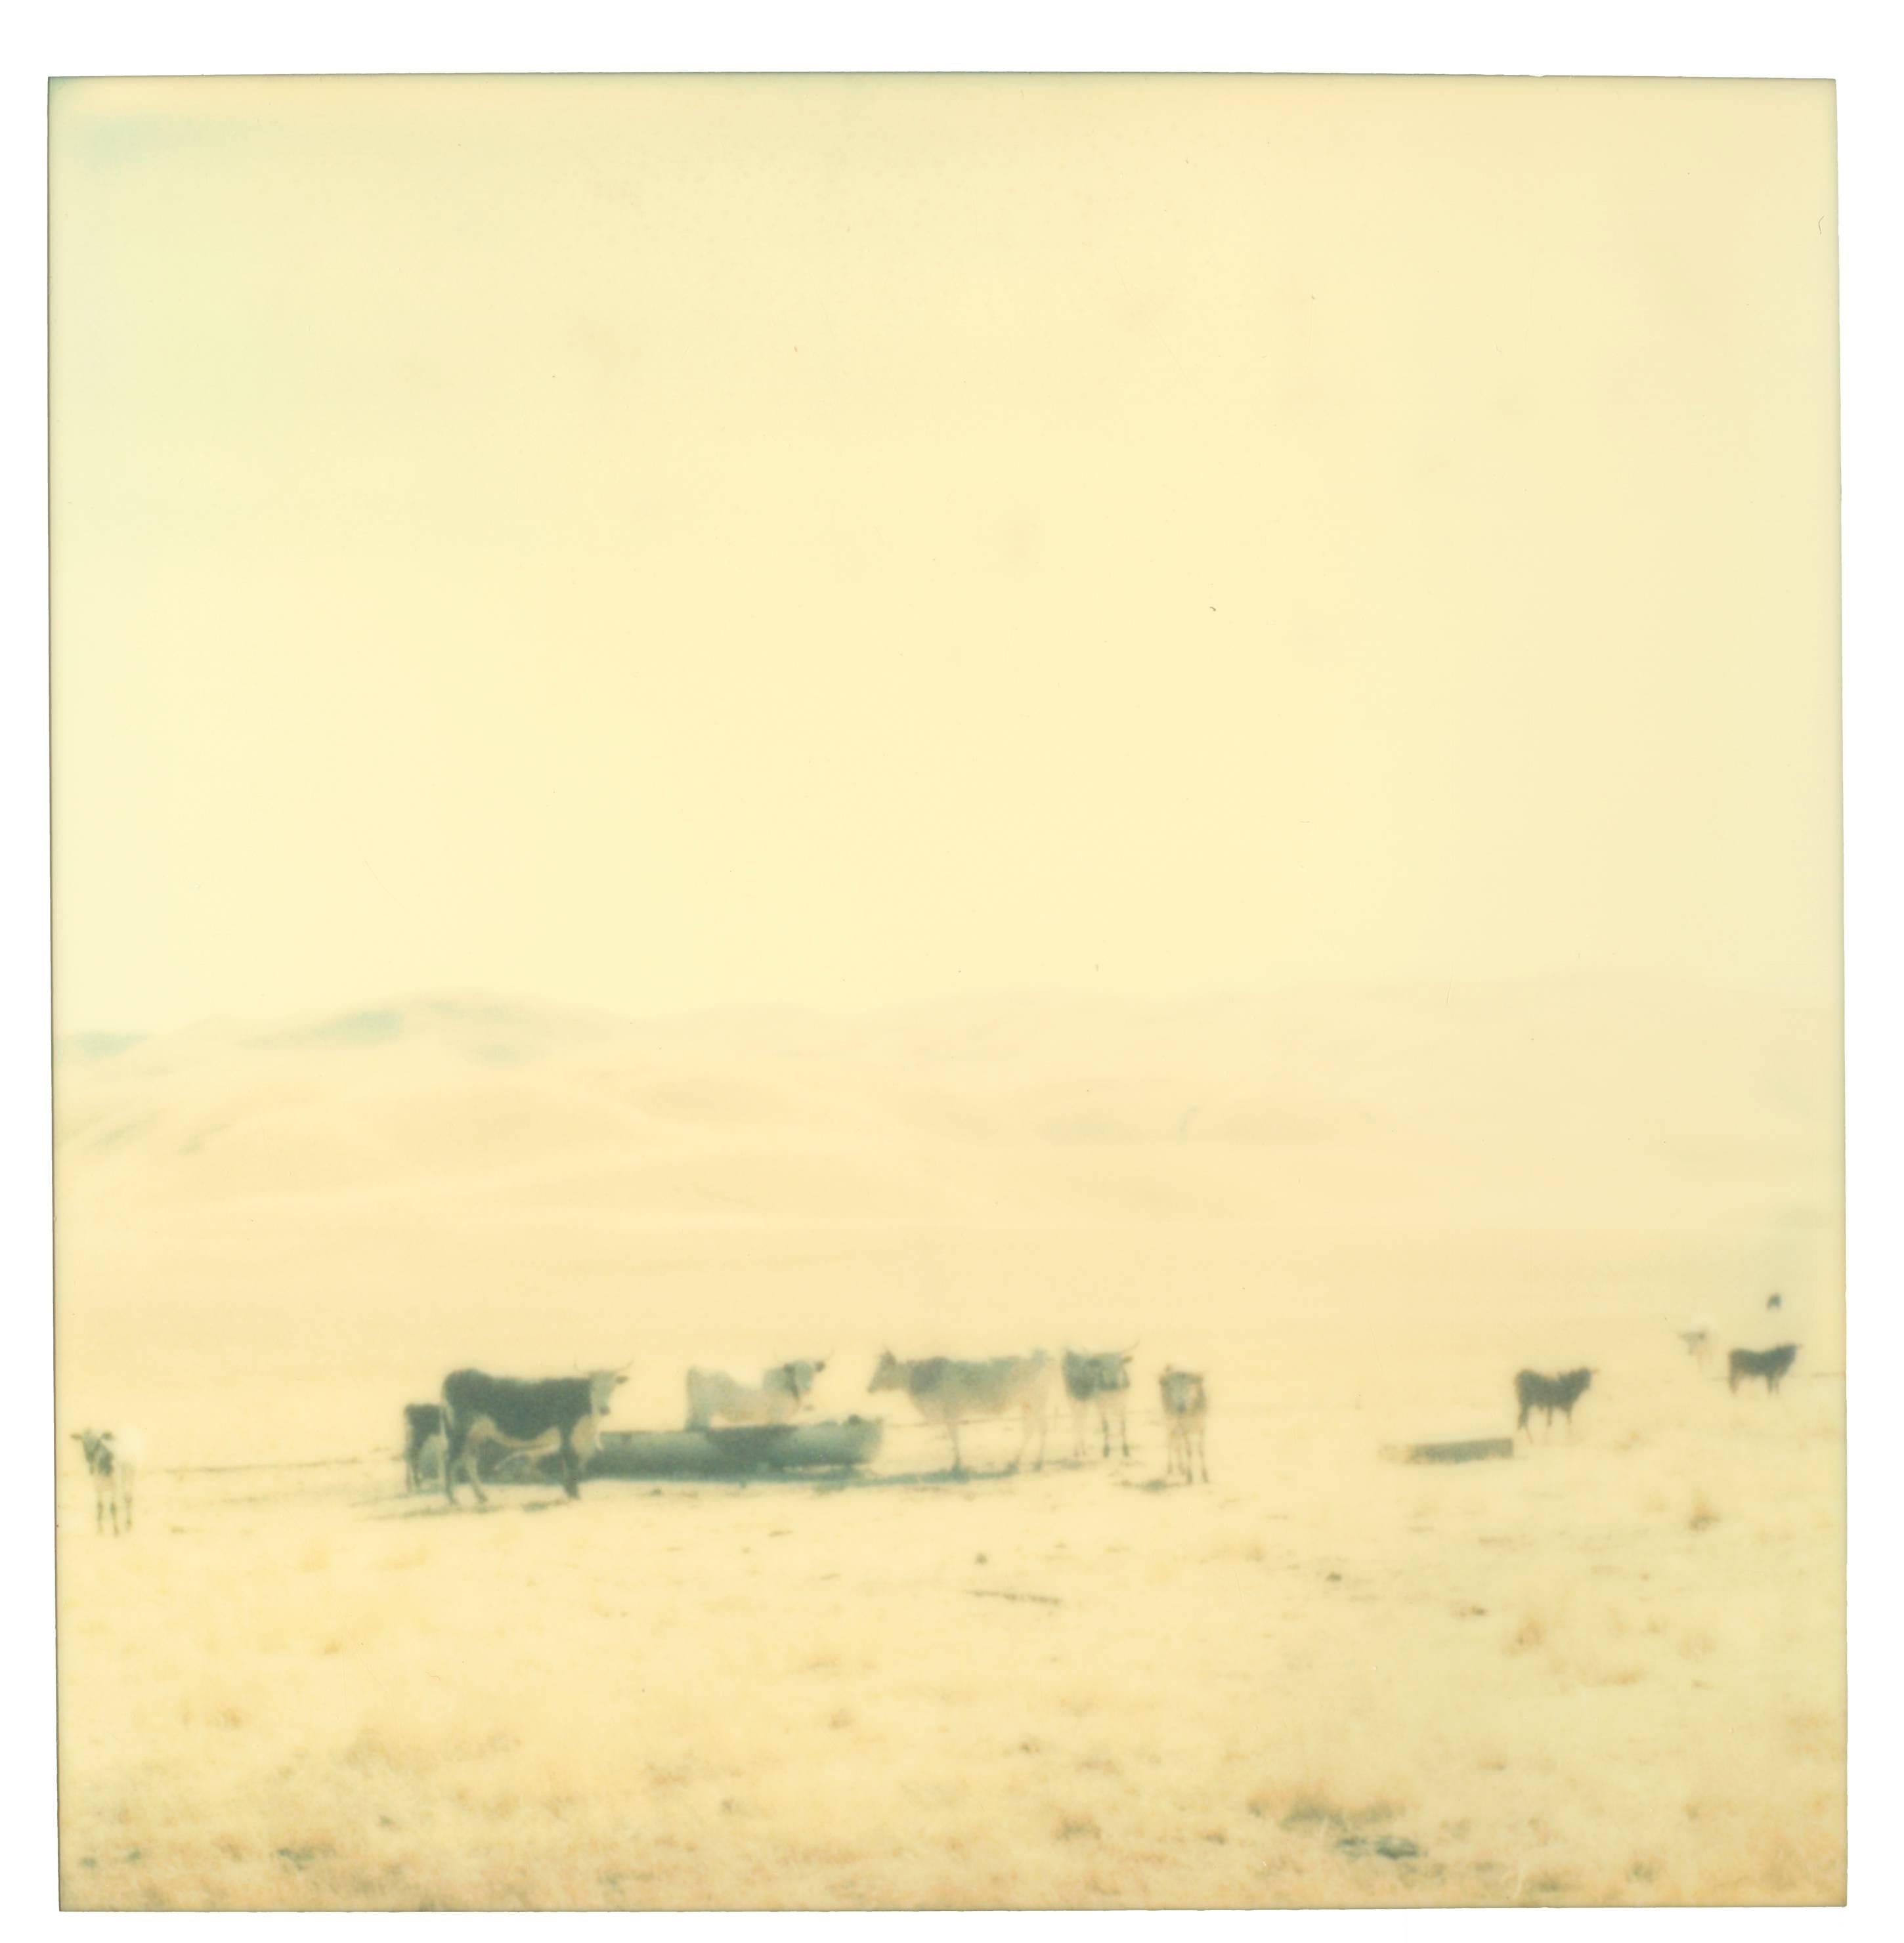 Stefanie Schneider Landscape Photograph - Untitled - Oilfields